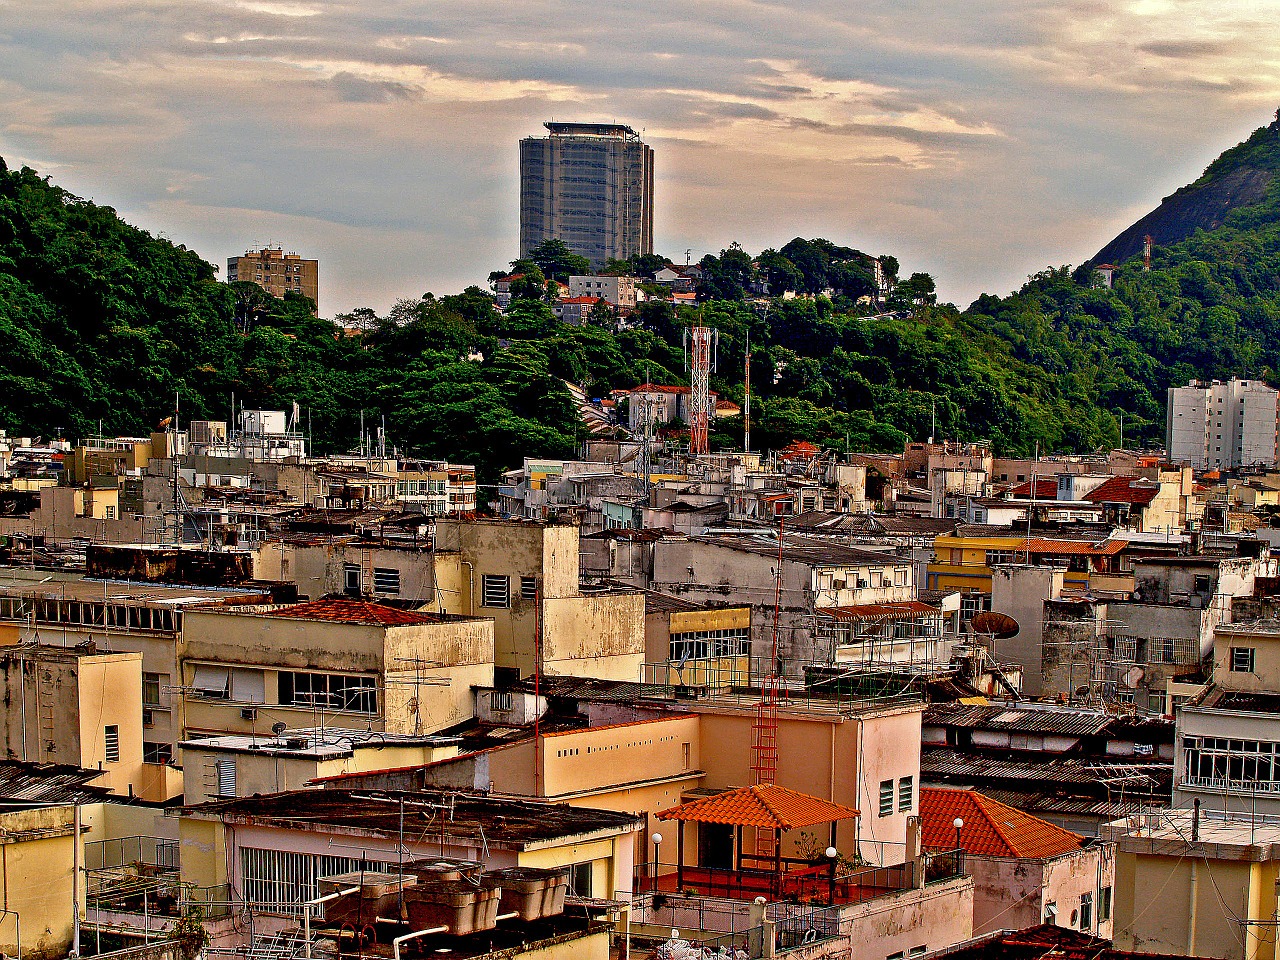 A "favela"